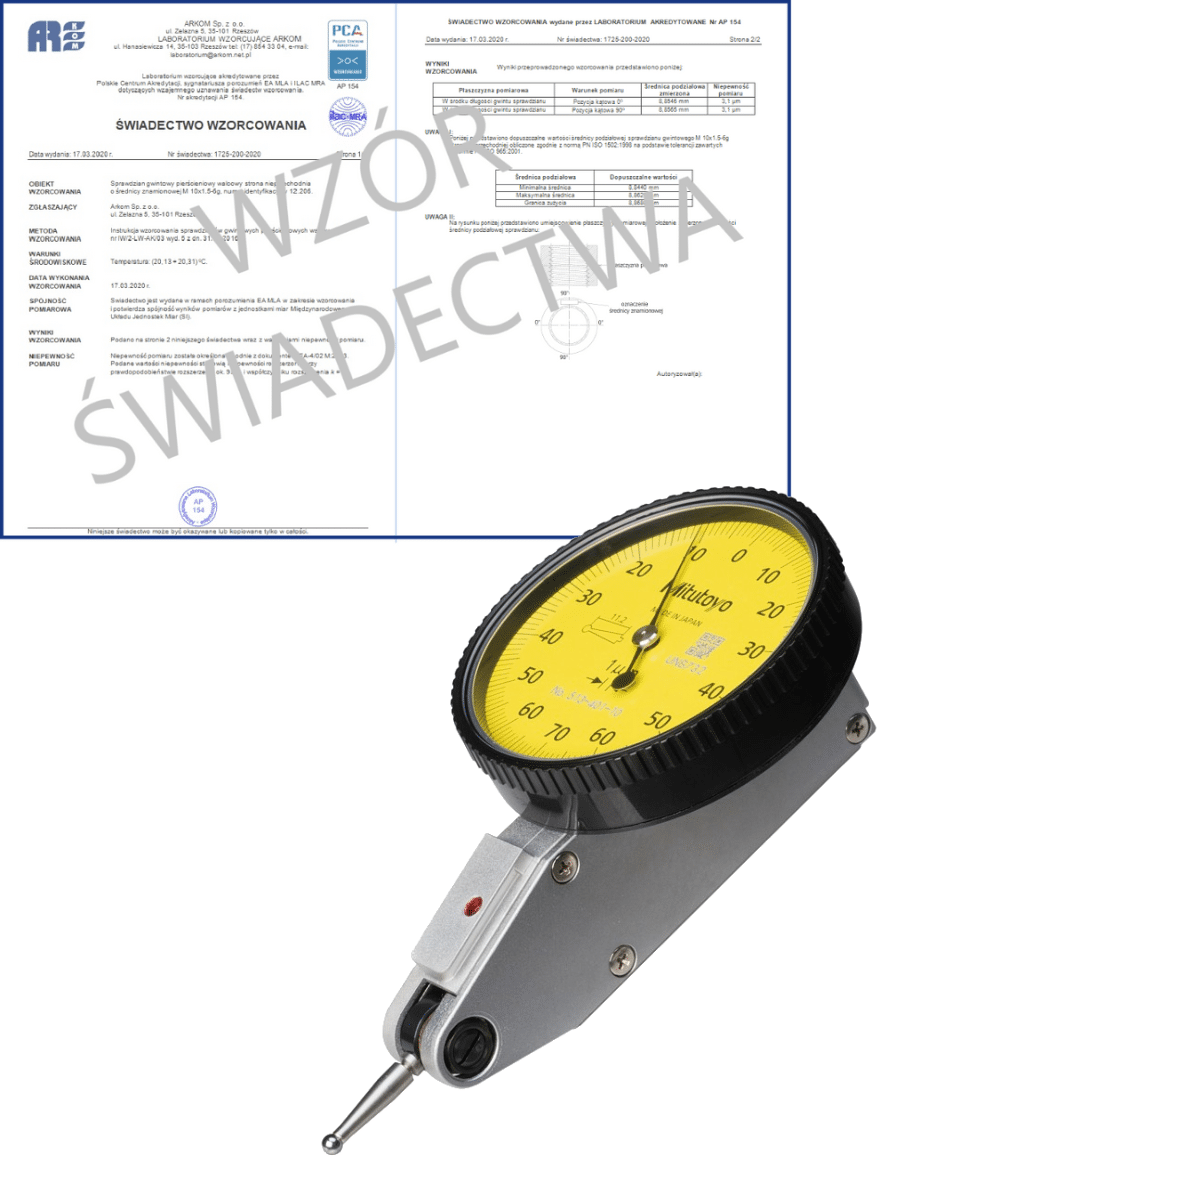 MITUTOYO czujnik dźwigniowo-zębaty 0-70-0/0,14/0,001 mm + świadectwo wzorcowania PCA 513-401-10E WZORC (Zdjęcie 1)